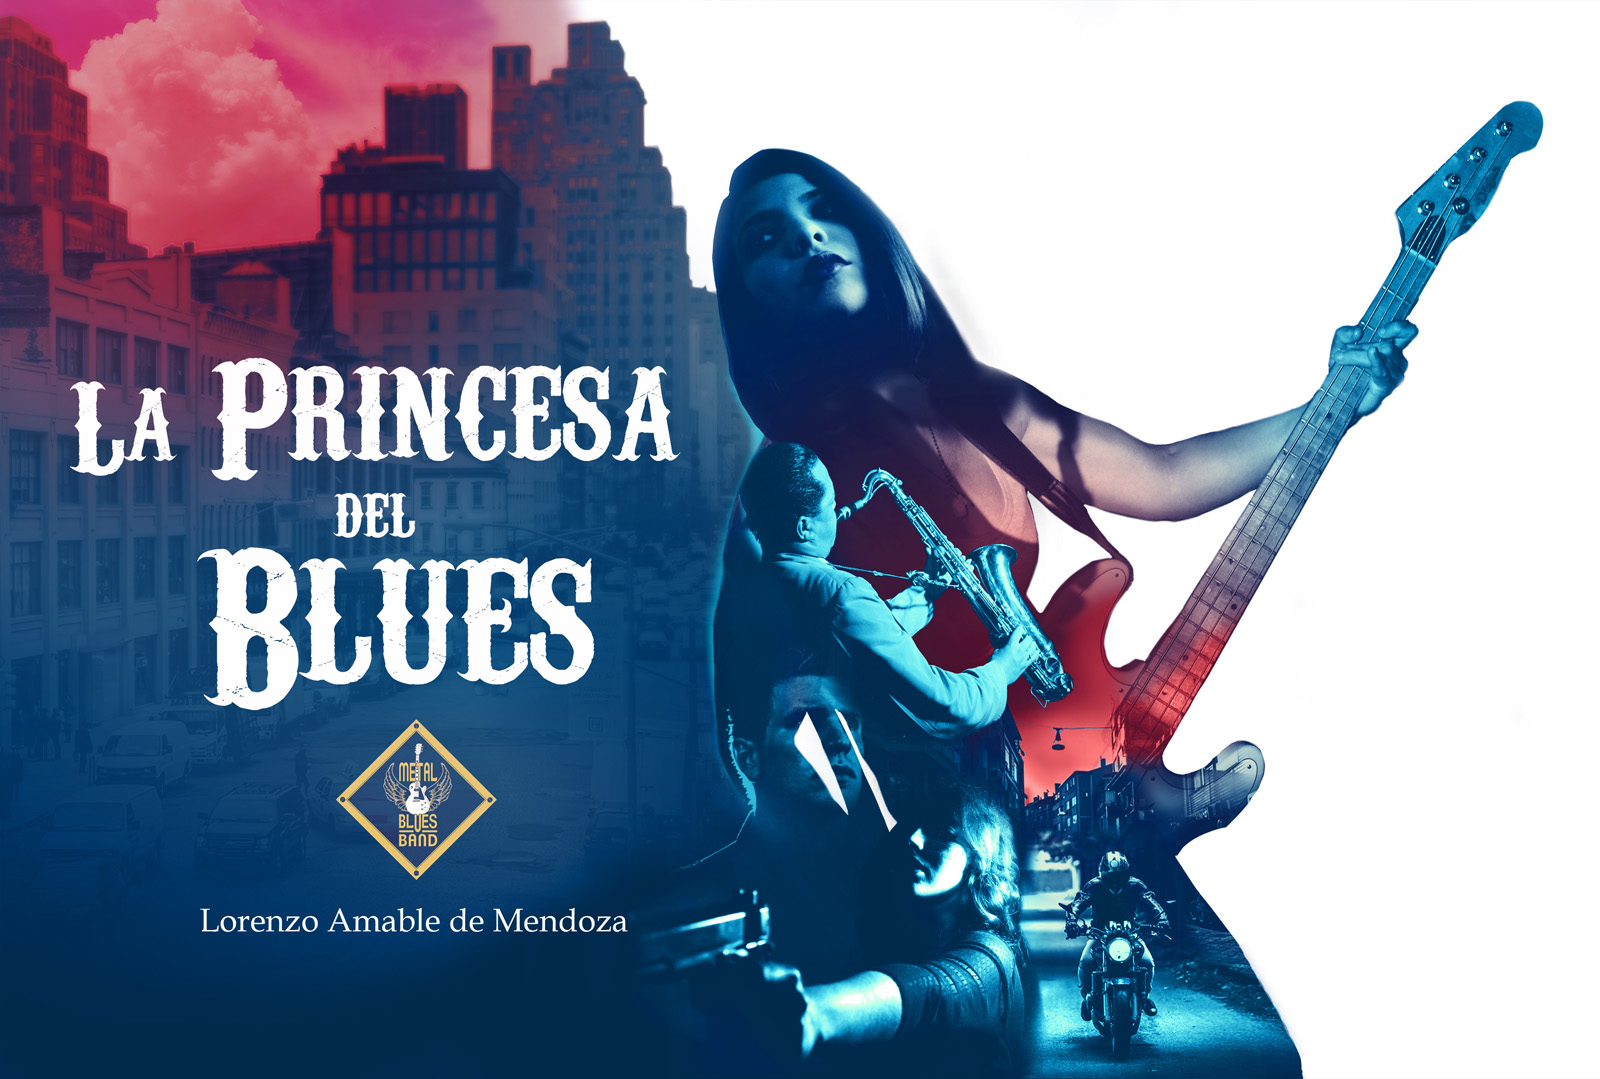 Resultado de imagen para princesa del blues